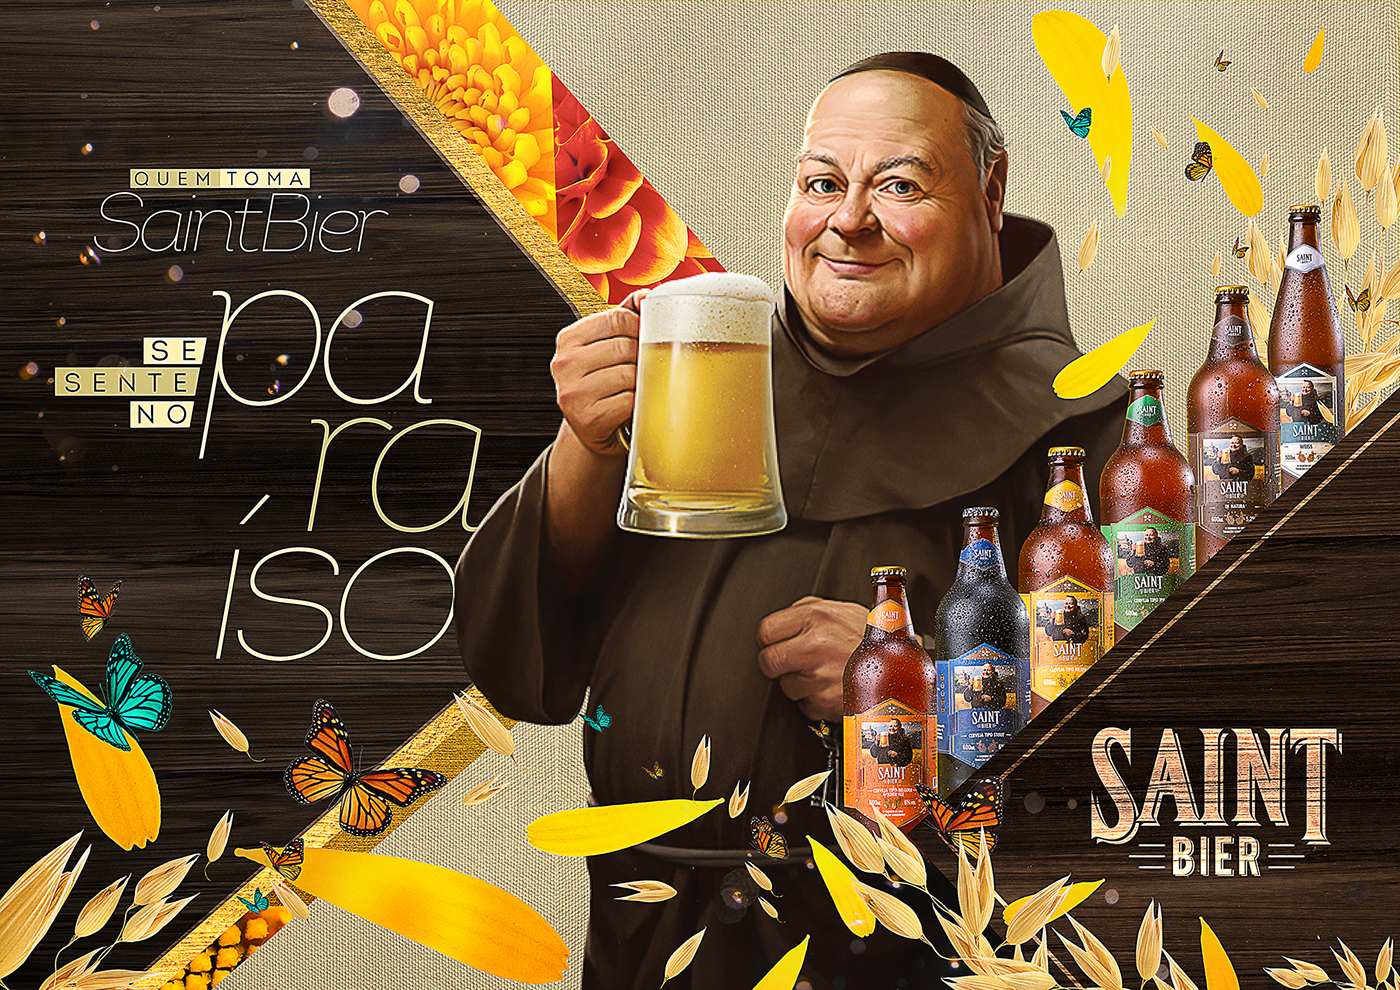 Bier Kraft alcool kraftbier saintbier campanha Cerveja artesanal